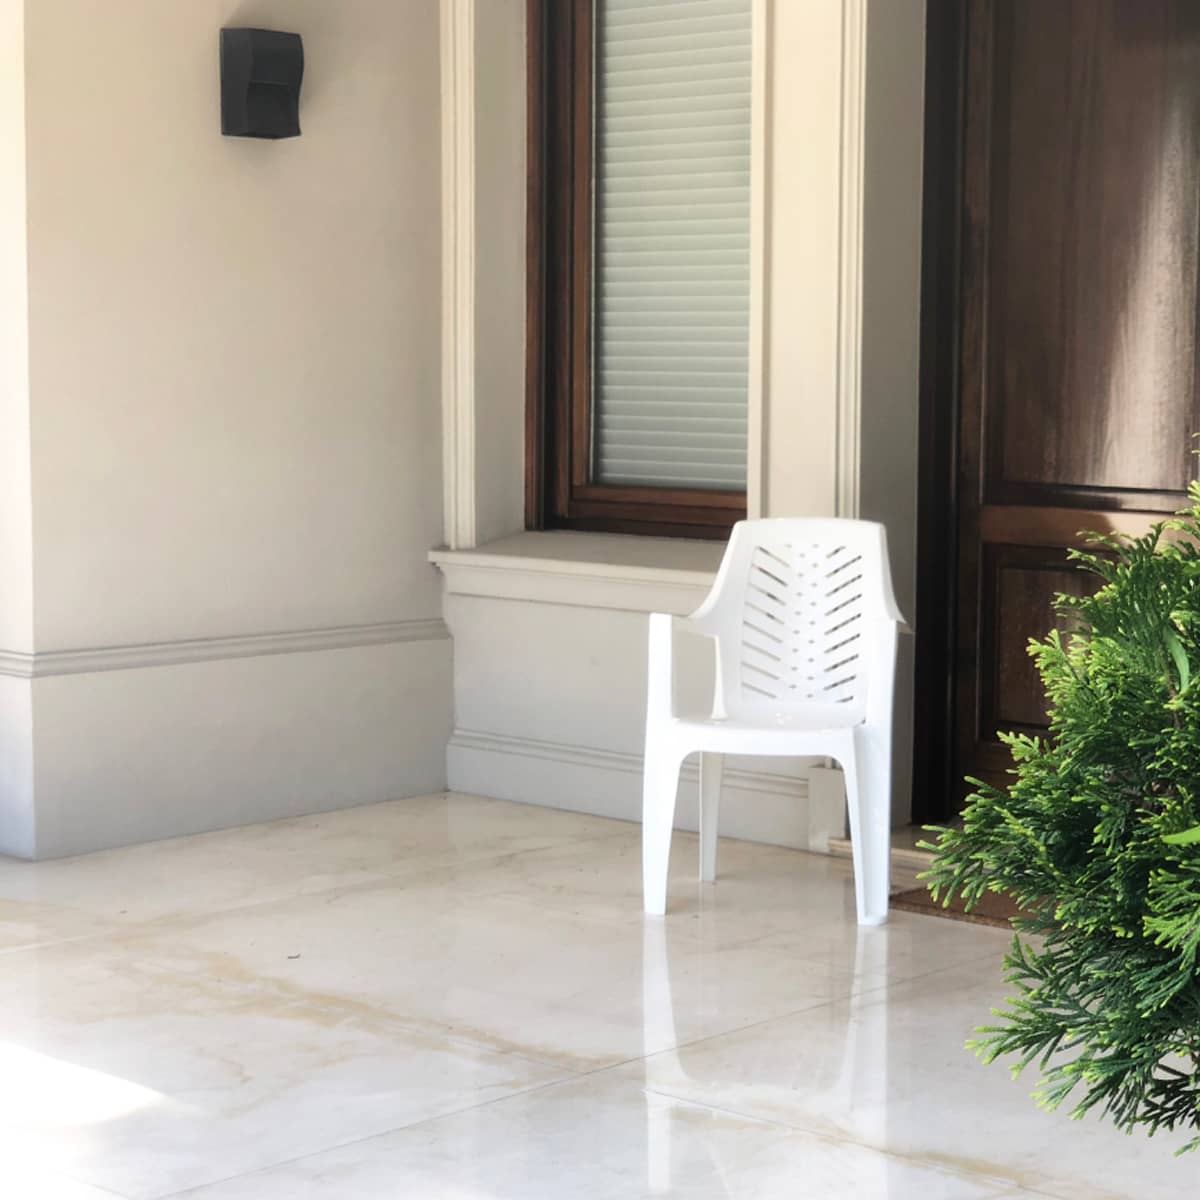 Silla De Plástico Blanca Con Apoya Brazos Jardín Marbella - MundoTrabajo